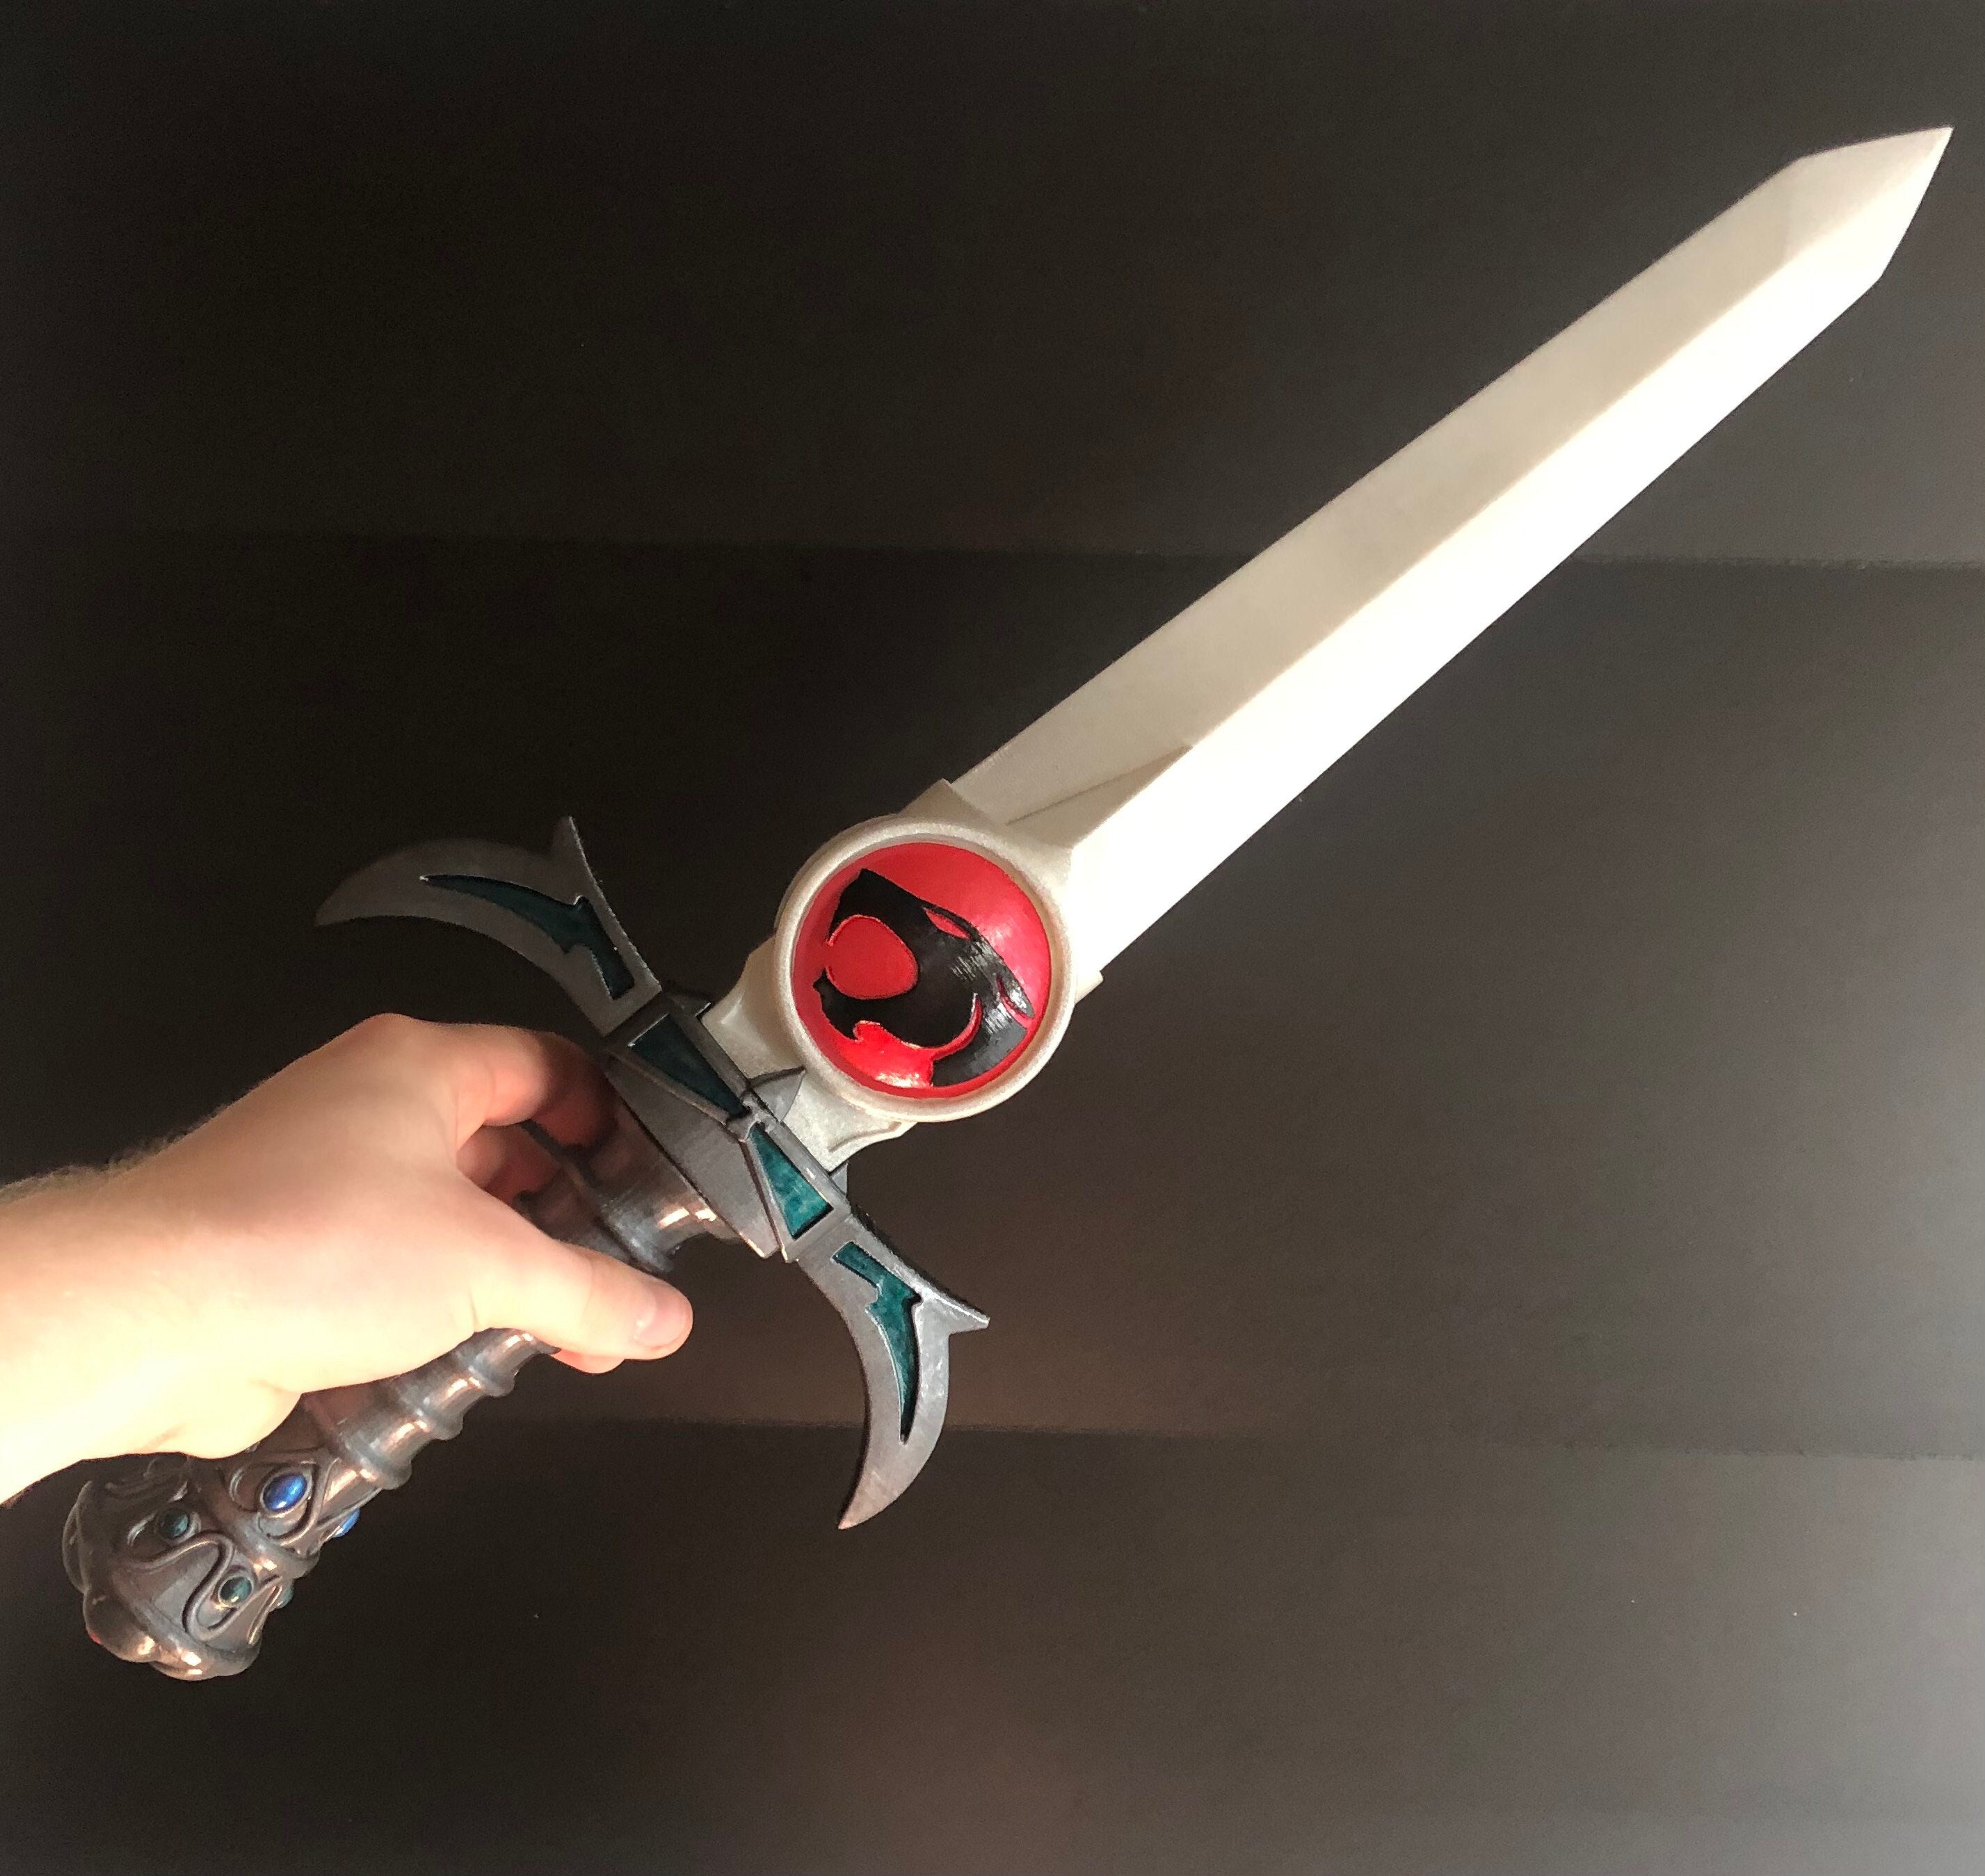 Demon Slayer Kimetsu no Yaiba Sword Replica